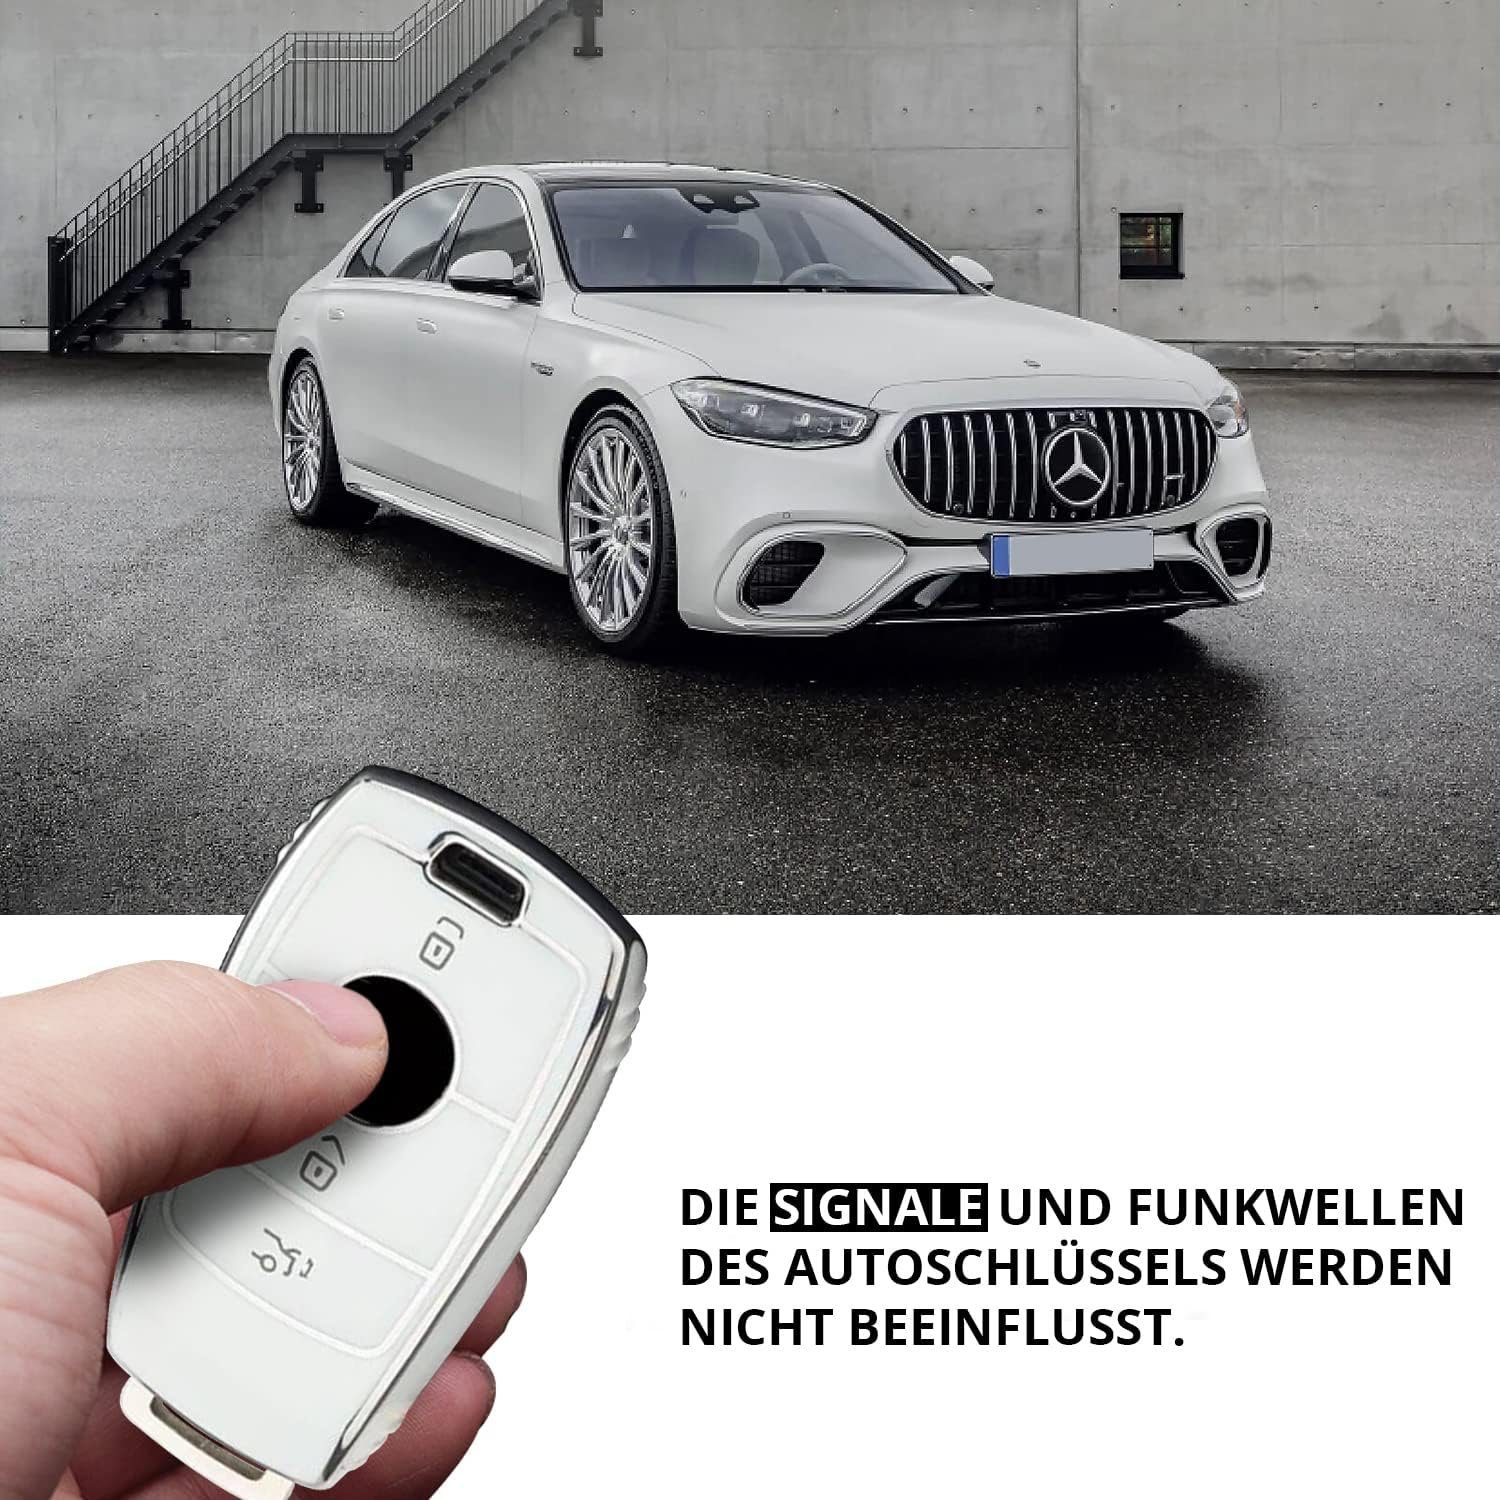 Benz, Mercedes für Weiss/Chrom Schlüsselhülle Tasche Hülle Keyscover Schlüsseltasche Cover Autoschlüssel